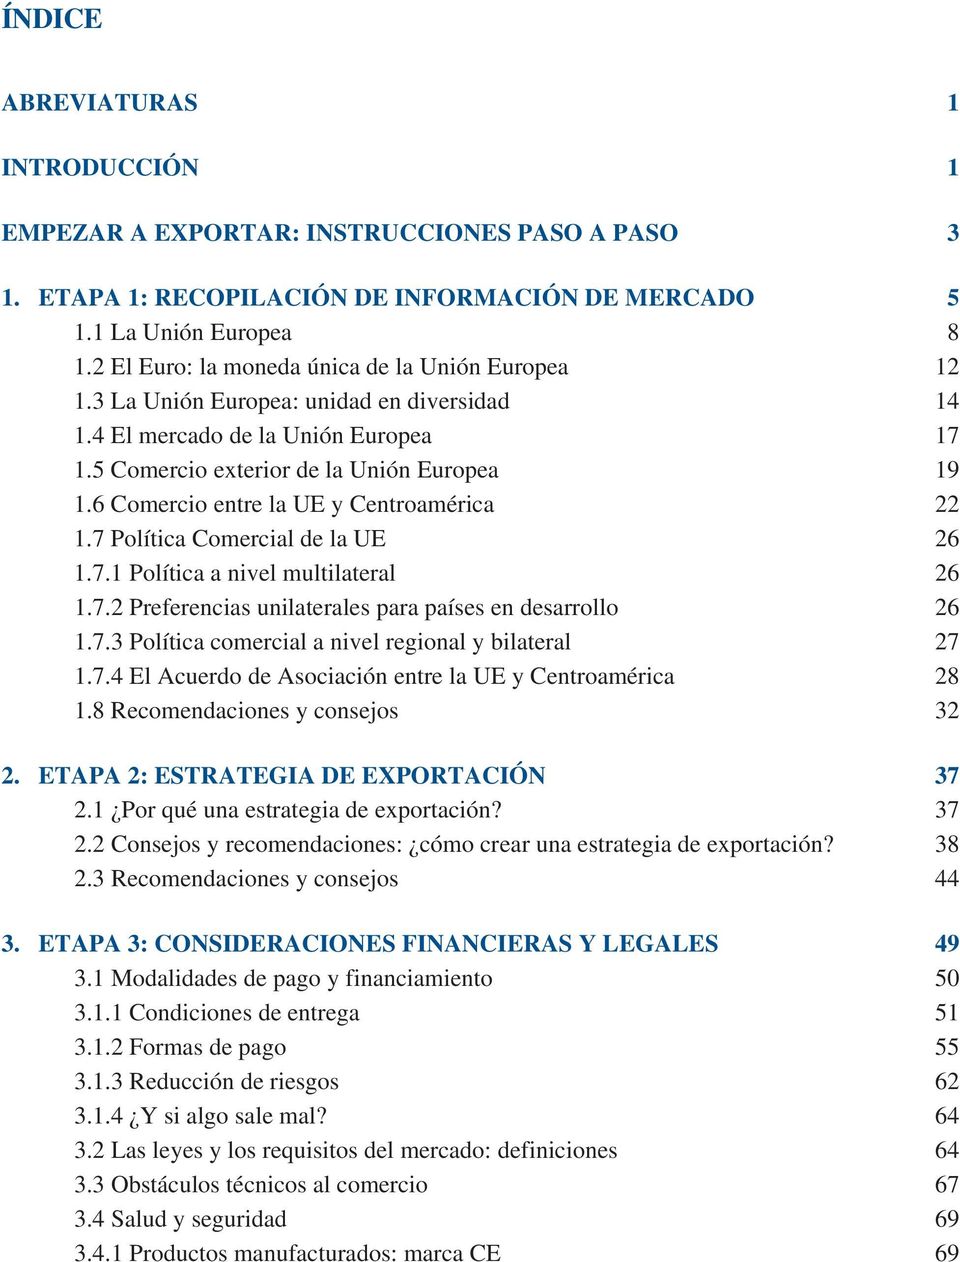 6 Comercio entre la UE y Centroamérica 22 1.7 Política Comercial de la UE 26 1.7.1 Política a nivel multilateral 26 1.7.2 Preferencias unilaterales para países en desarrollo 26 1.7.3 Política comercial a nivel regional y bilateral 27 1.